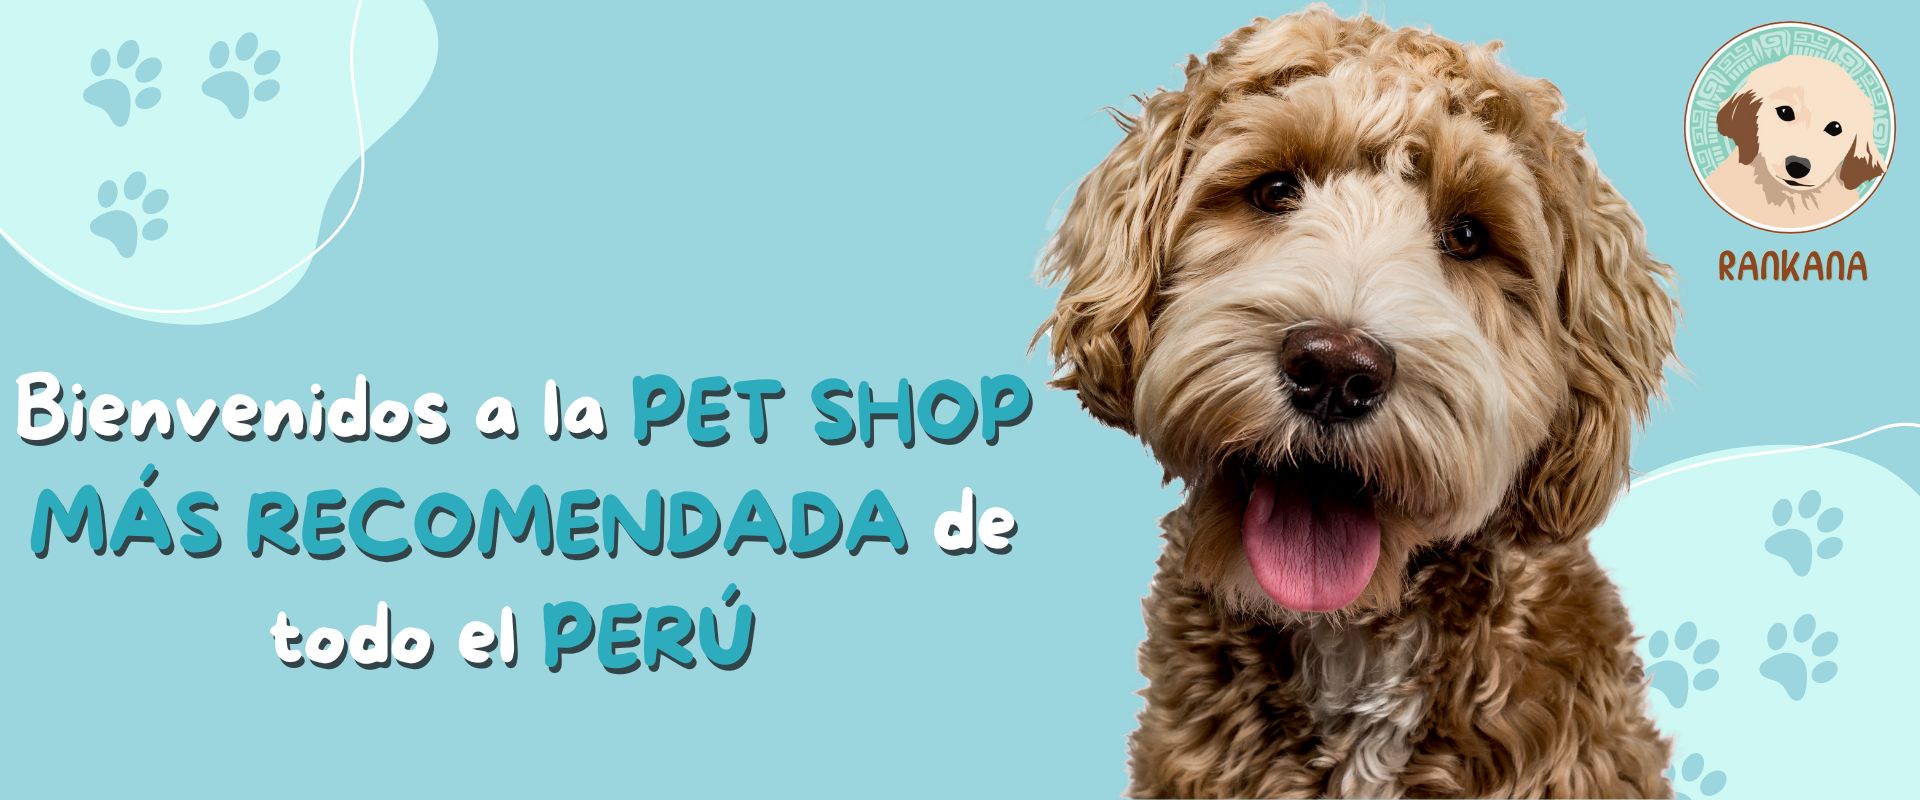 Serrado victoria Ponte de pie en su lugar Venta de Alimentos para Mascotas - RANKANA - Tienda Online